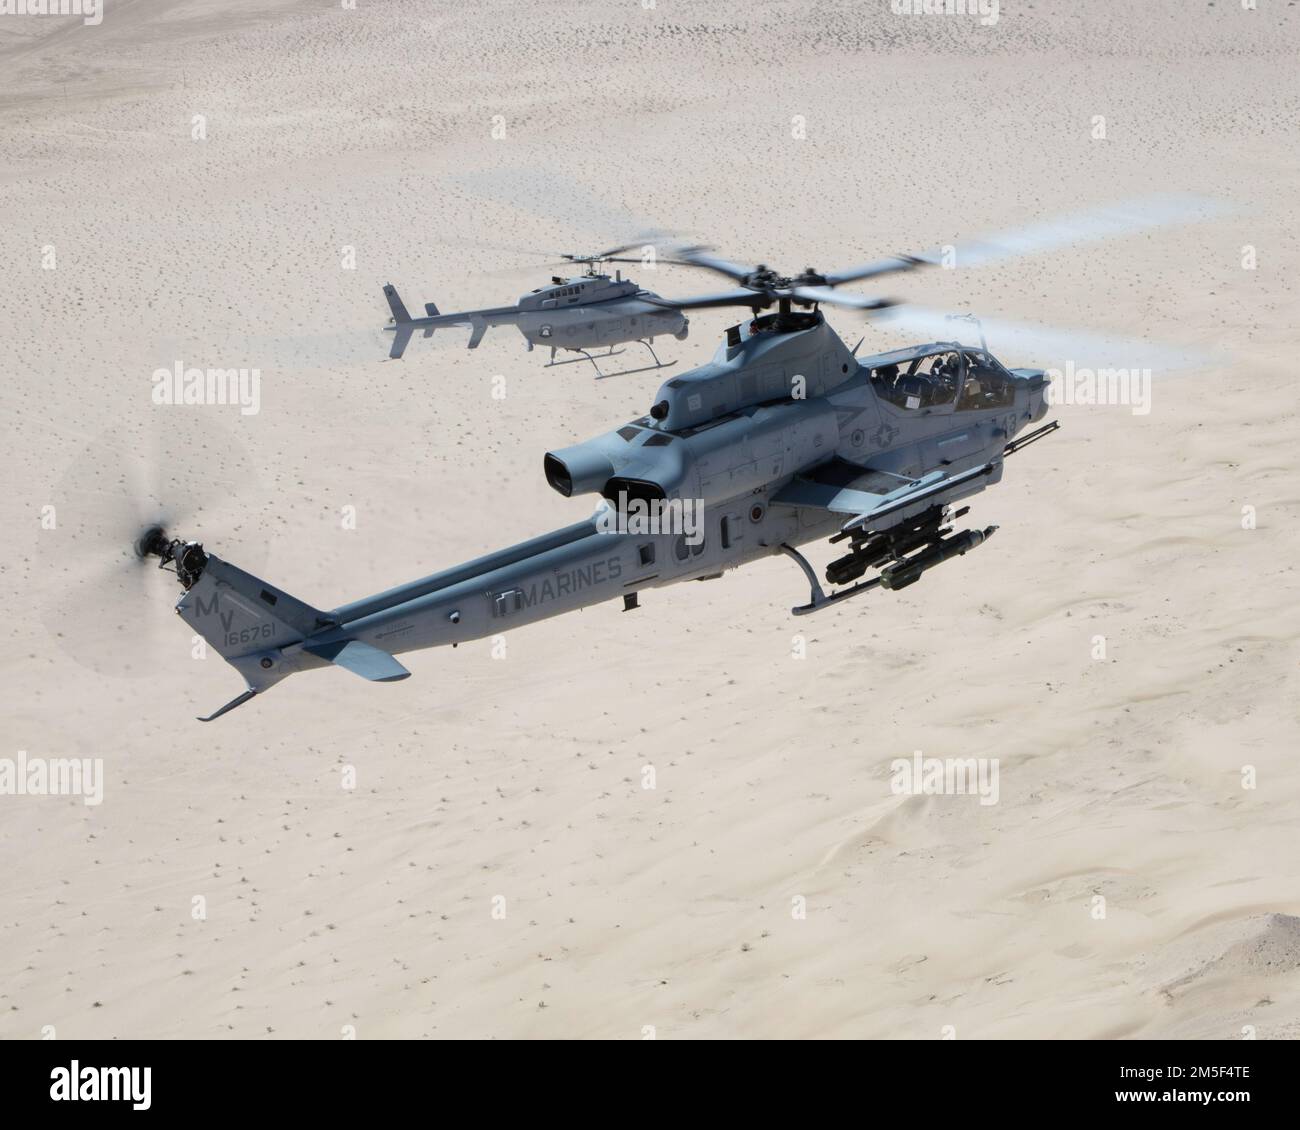 Un AH-1Z VIPER (FRENTE) con el Escuadrón de Evaluación Operacional y de Pruebas de la Marina 1 (VMX-1), y un helicóptero MQ-8C Fire Scout no tripulado asignado al Escuadrón de Combate Marítimo de Helicópteros 23 (HSC-23), realizan la Coordinación de Ataque y Entrenamiento de Reconocimiento cerca de El Centro, California, el 10 de marzo de 2022. El propósito de este ejercicio era proporcionar familiarización y desarrollo de conceptos de trabajo en equipo tripulado-no tripulado. Foto de stock